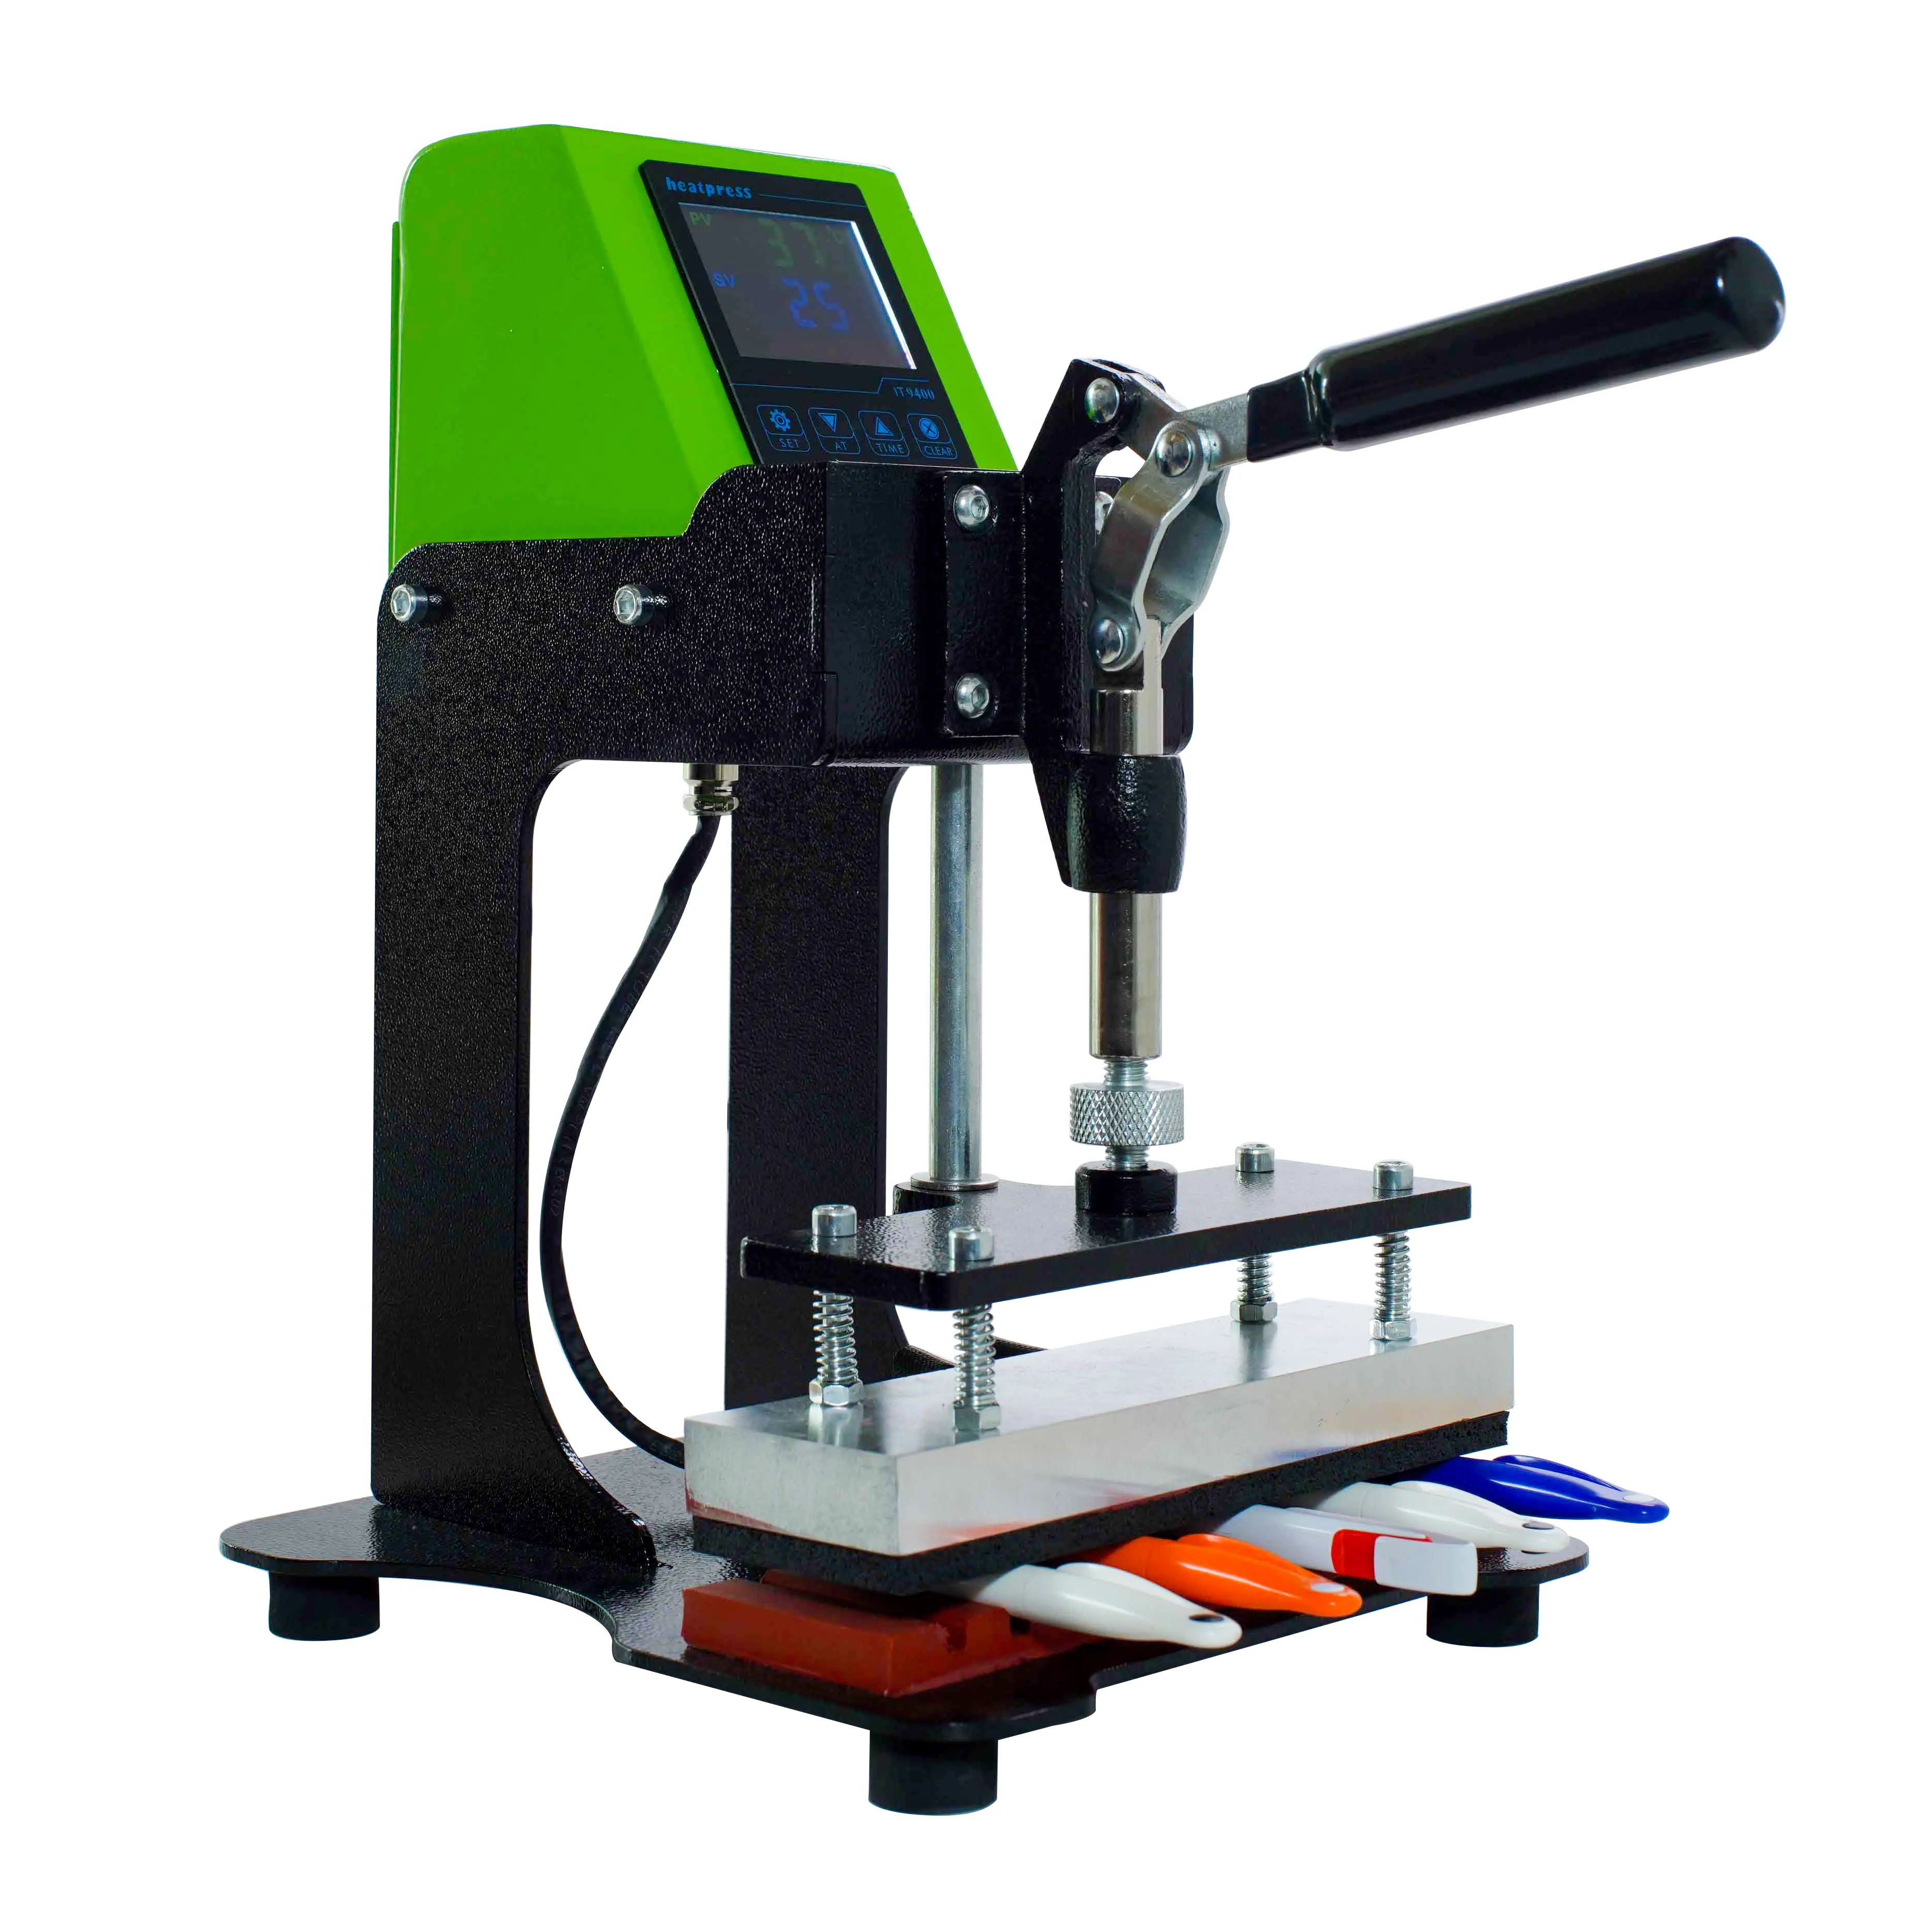 Factory価格Tenステーション熱プレスペンプリンタ/Digital Pen Machine For Heat Press